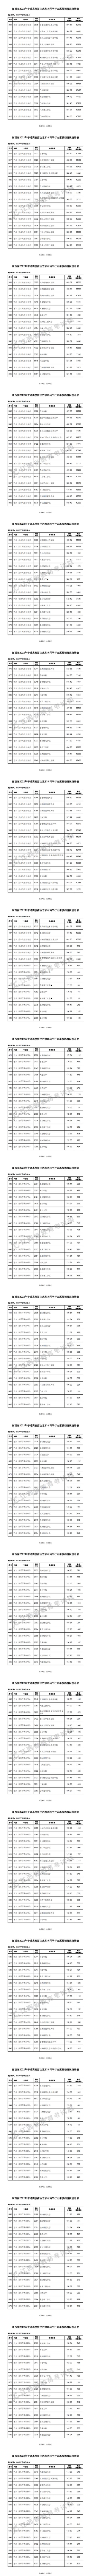 2022江西美术生高考分数线(2020年江西省艺术类普通批本科平行志愿投档分数线)